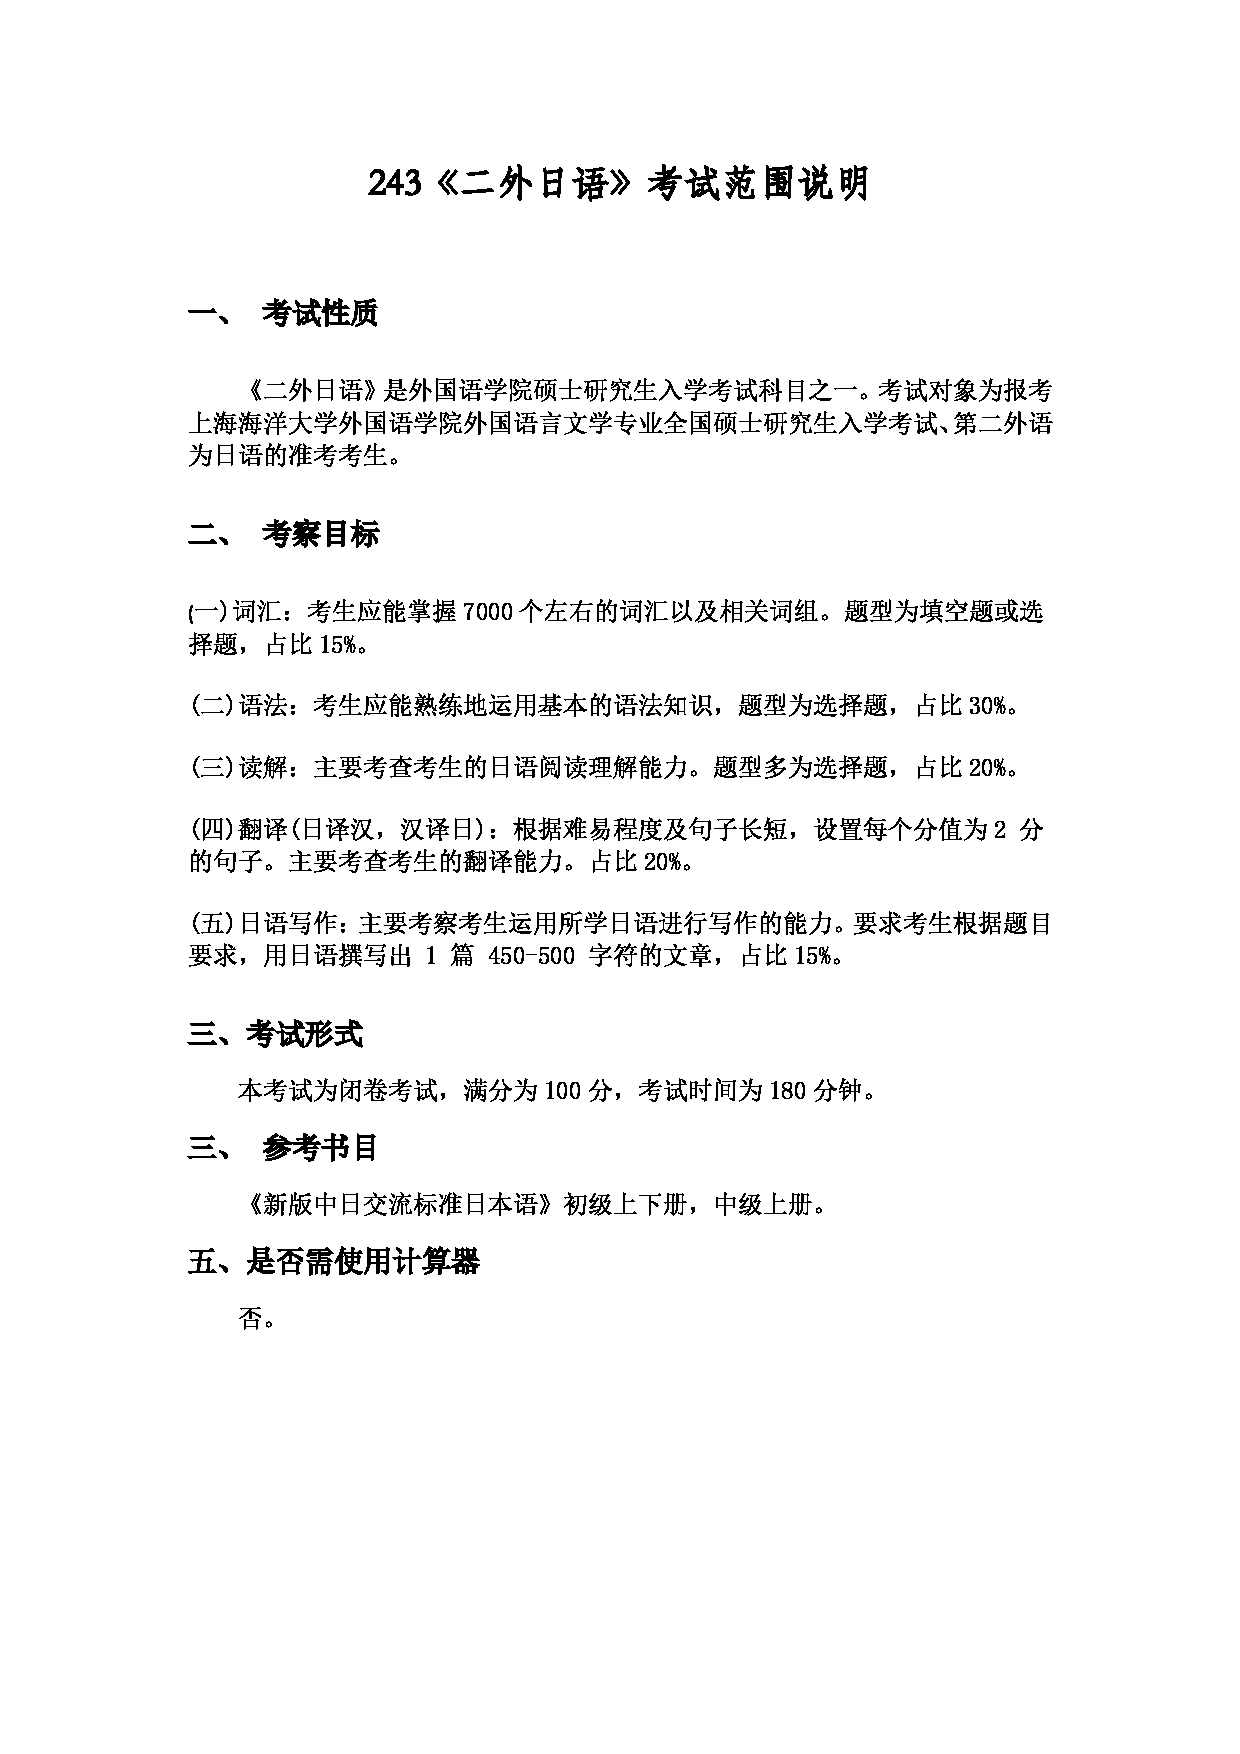 2022考研大纲：上海海洋大学2022年考研自命题科目  243二外日语 考试大纲第1页